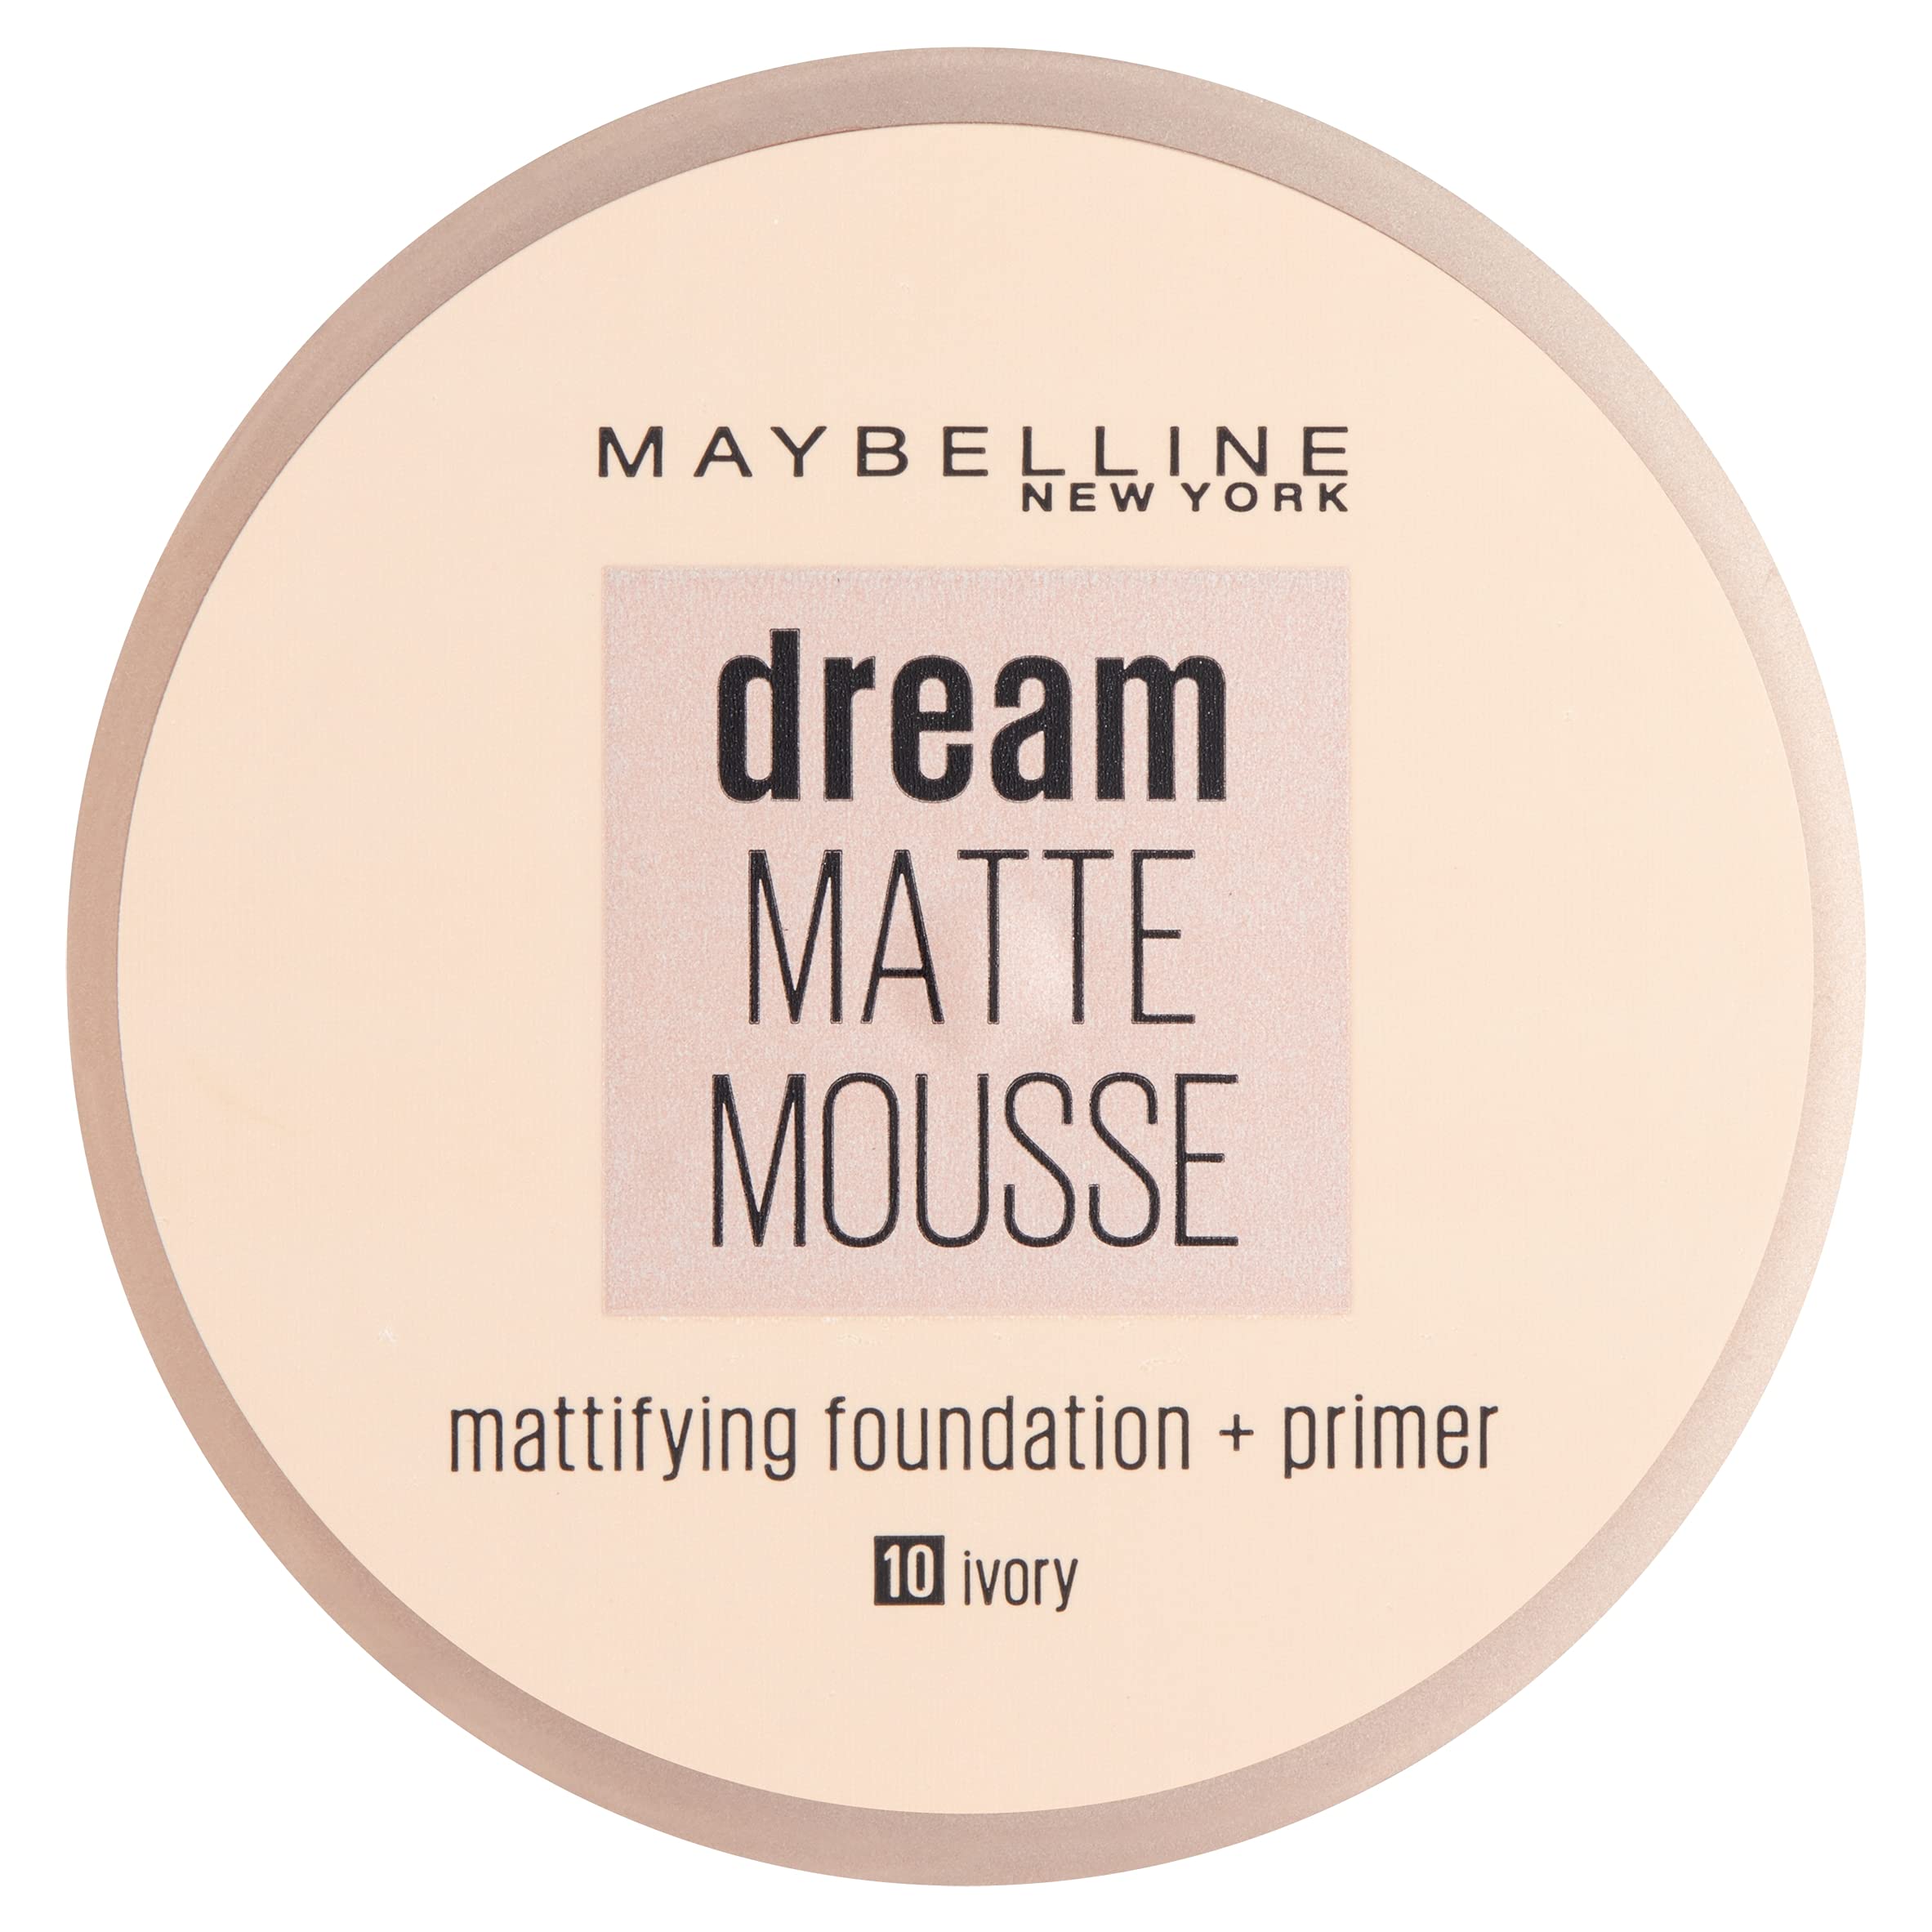 Maybelline Dream Matte Mousse Make Up Foundation + Primer 10 Ivory